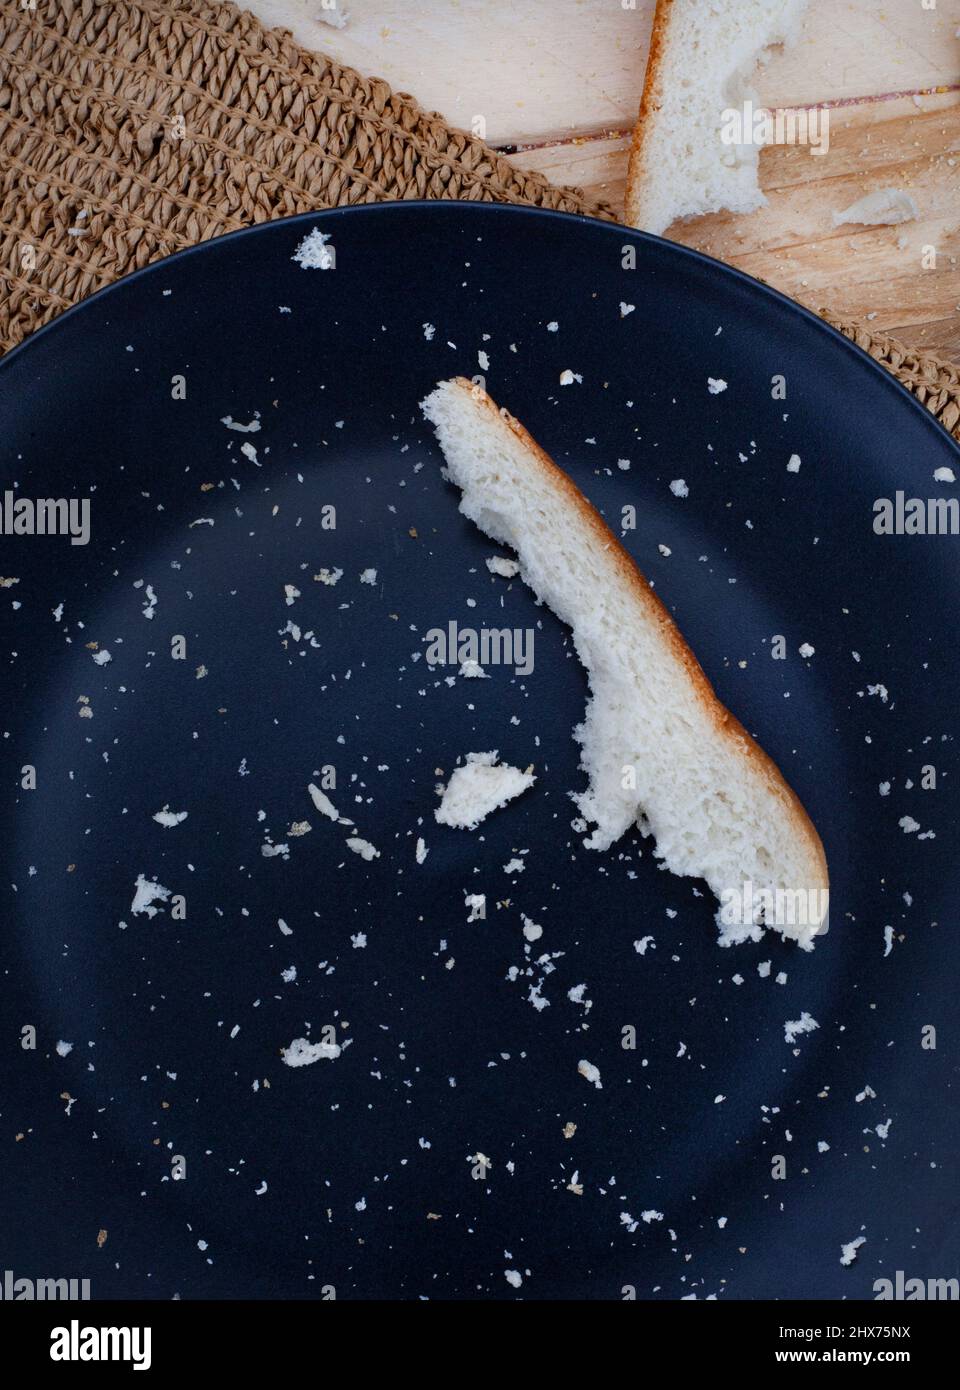 Croste e briciole di fette di pane bianco come sicurezza alimentare e scarsità incombono Foto Stock